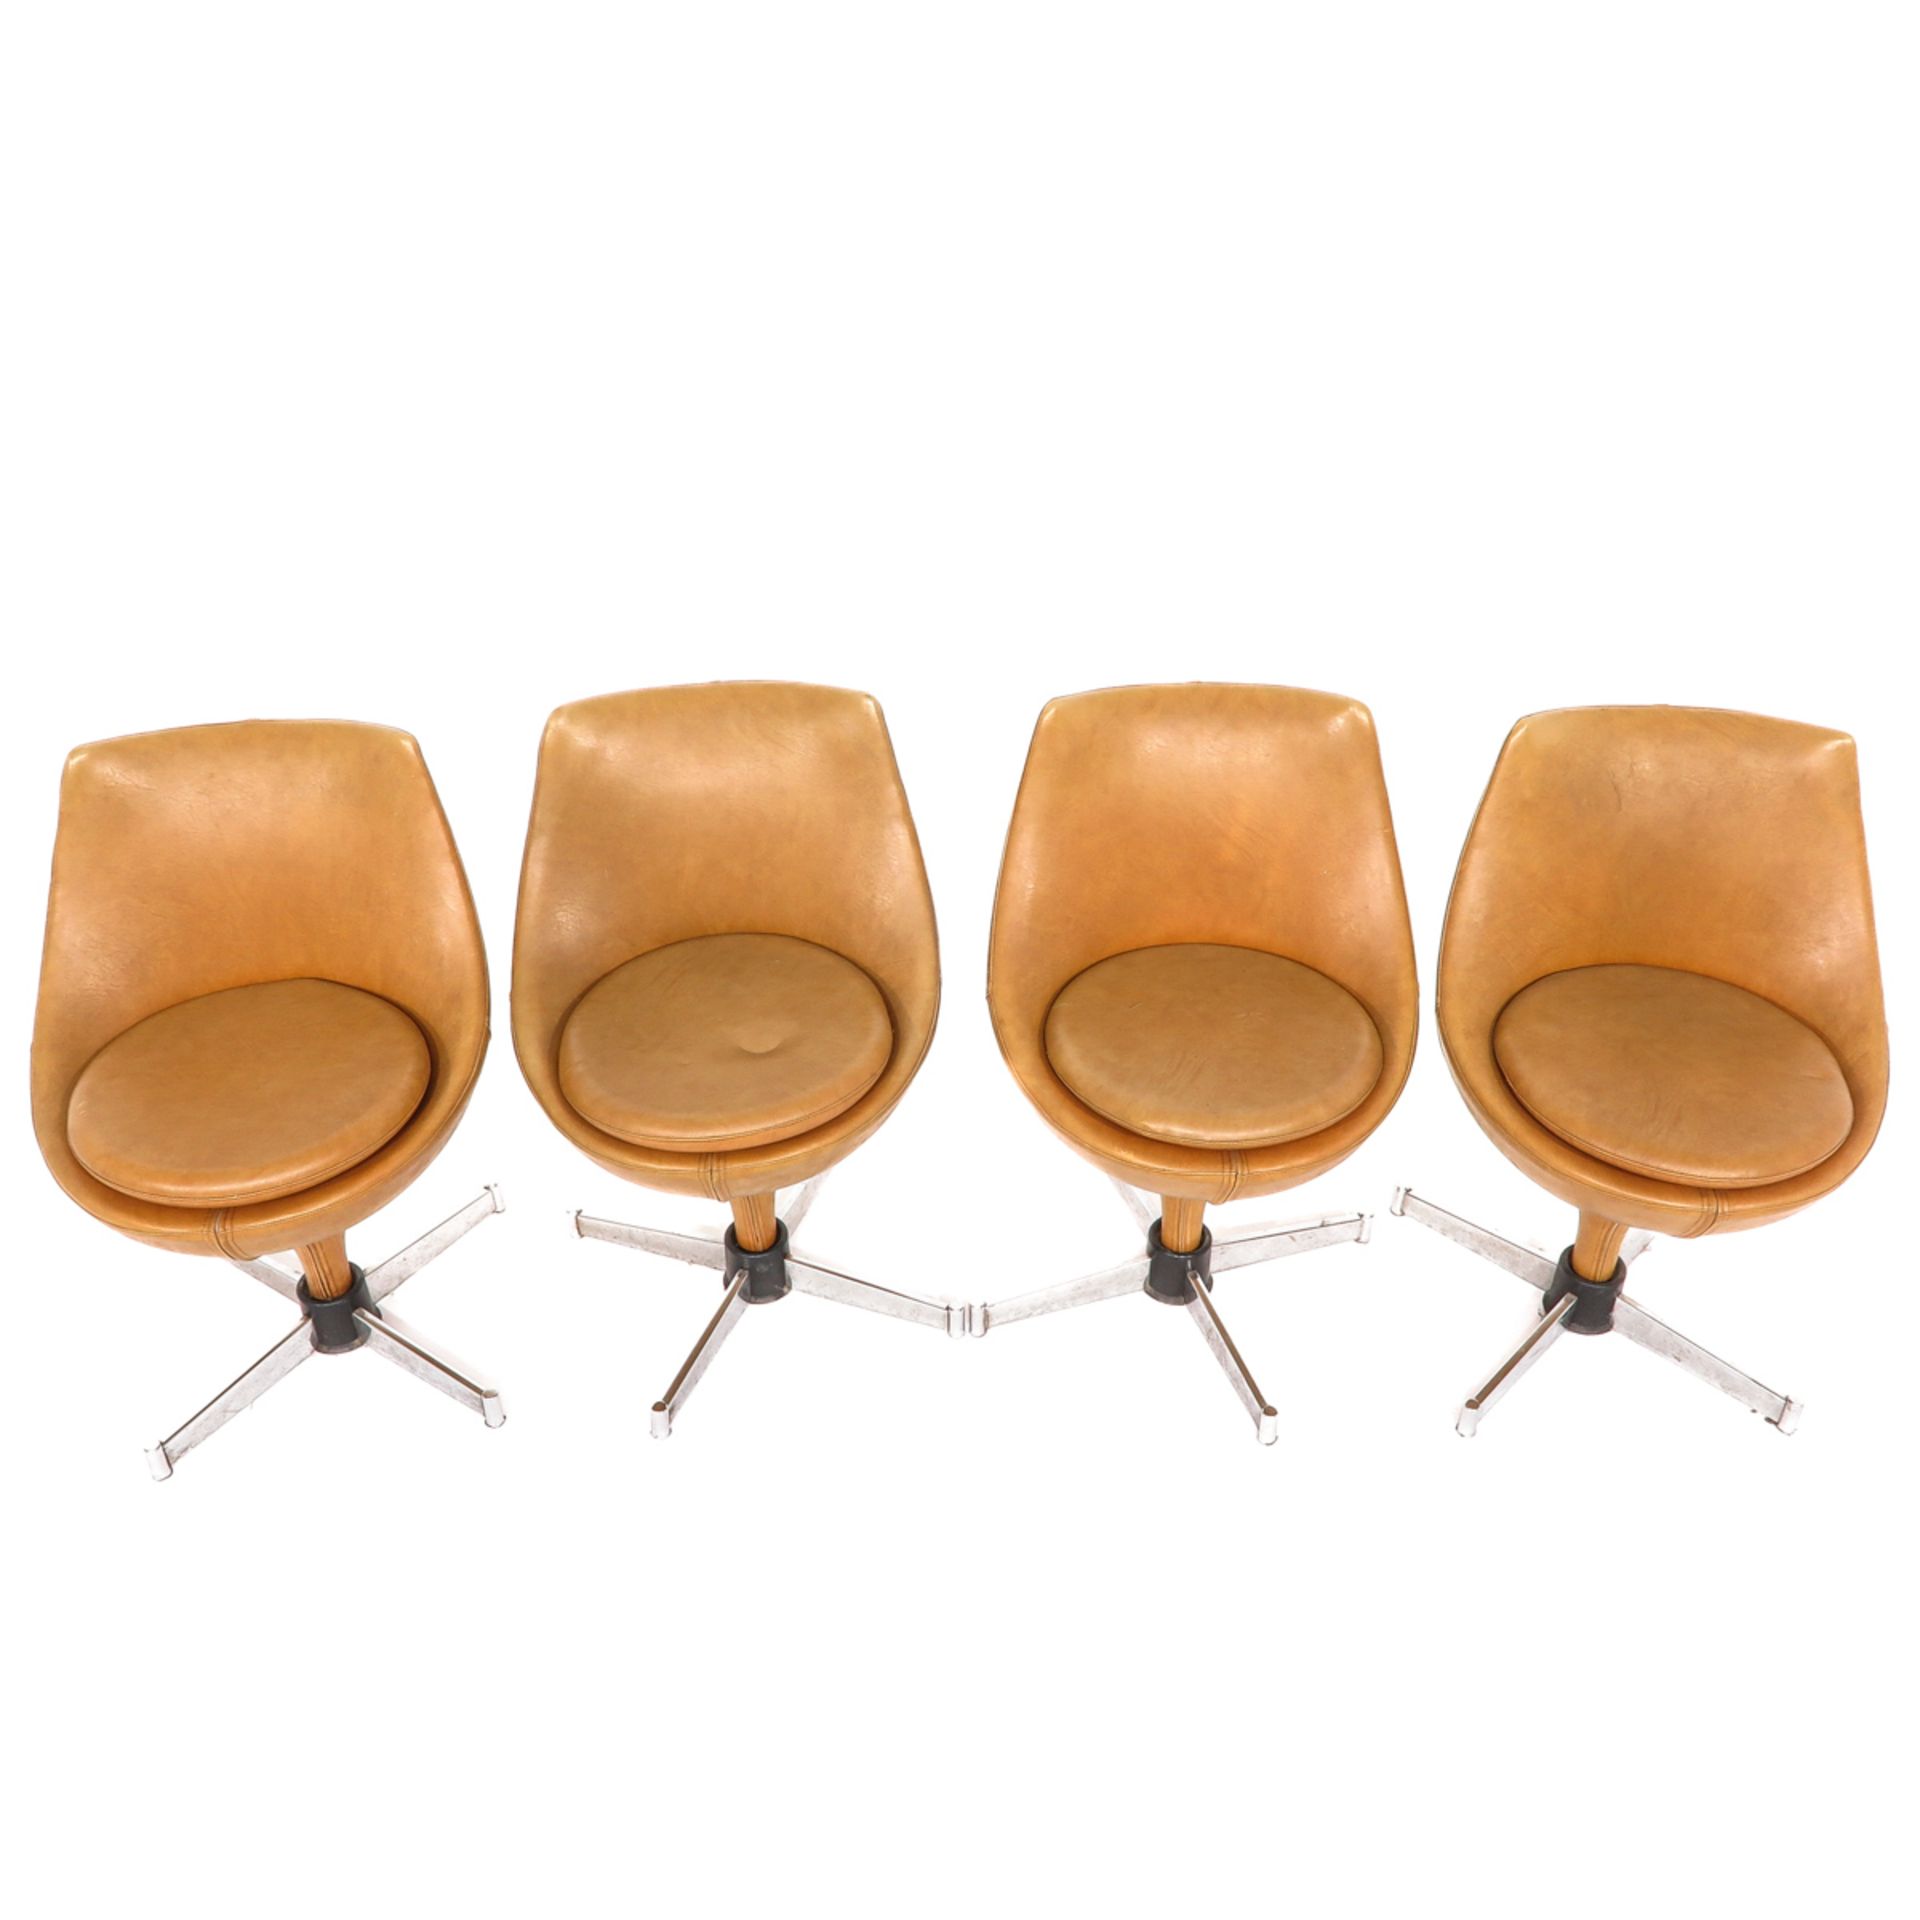 A Set of 4 Pierre Guariche Designer Chairs - Bild 5 aus 10